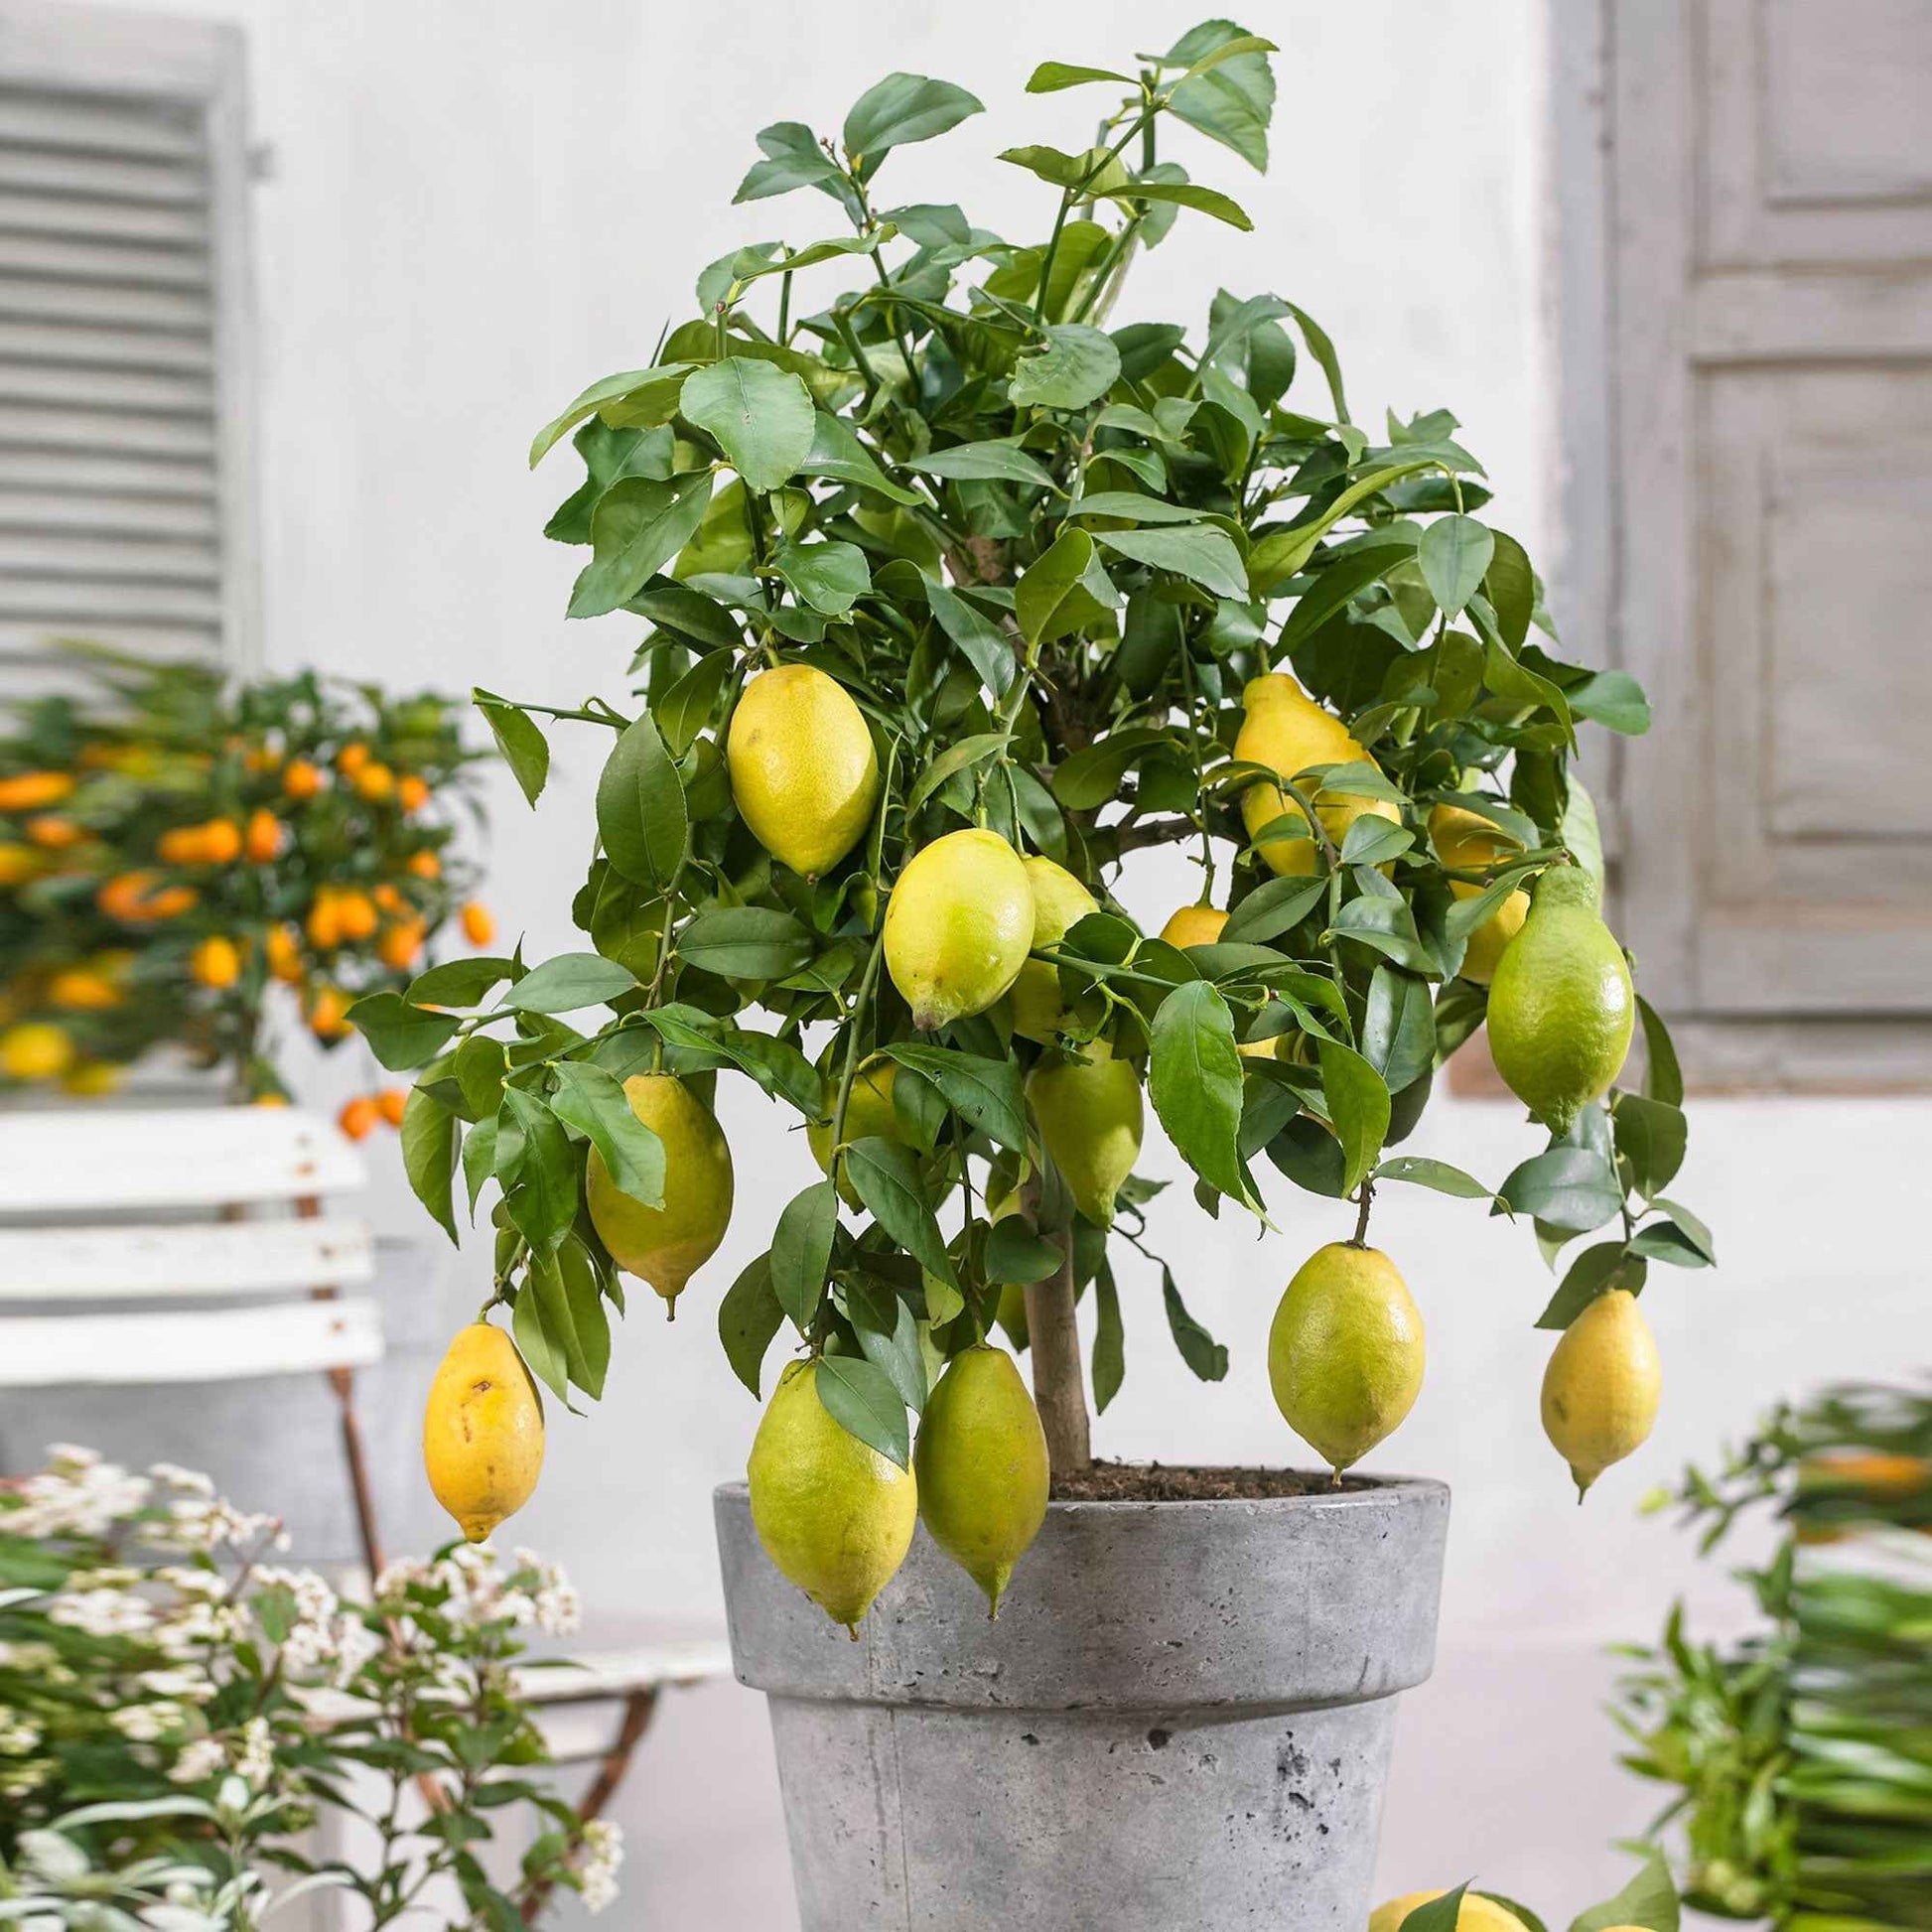 Zitronen-Bäumchen 'Vulcan' - Citrus limon vulcan - Obst